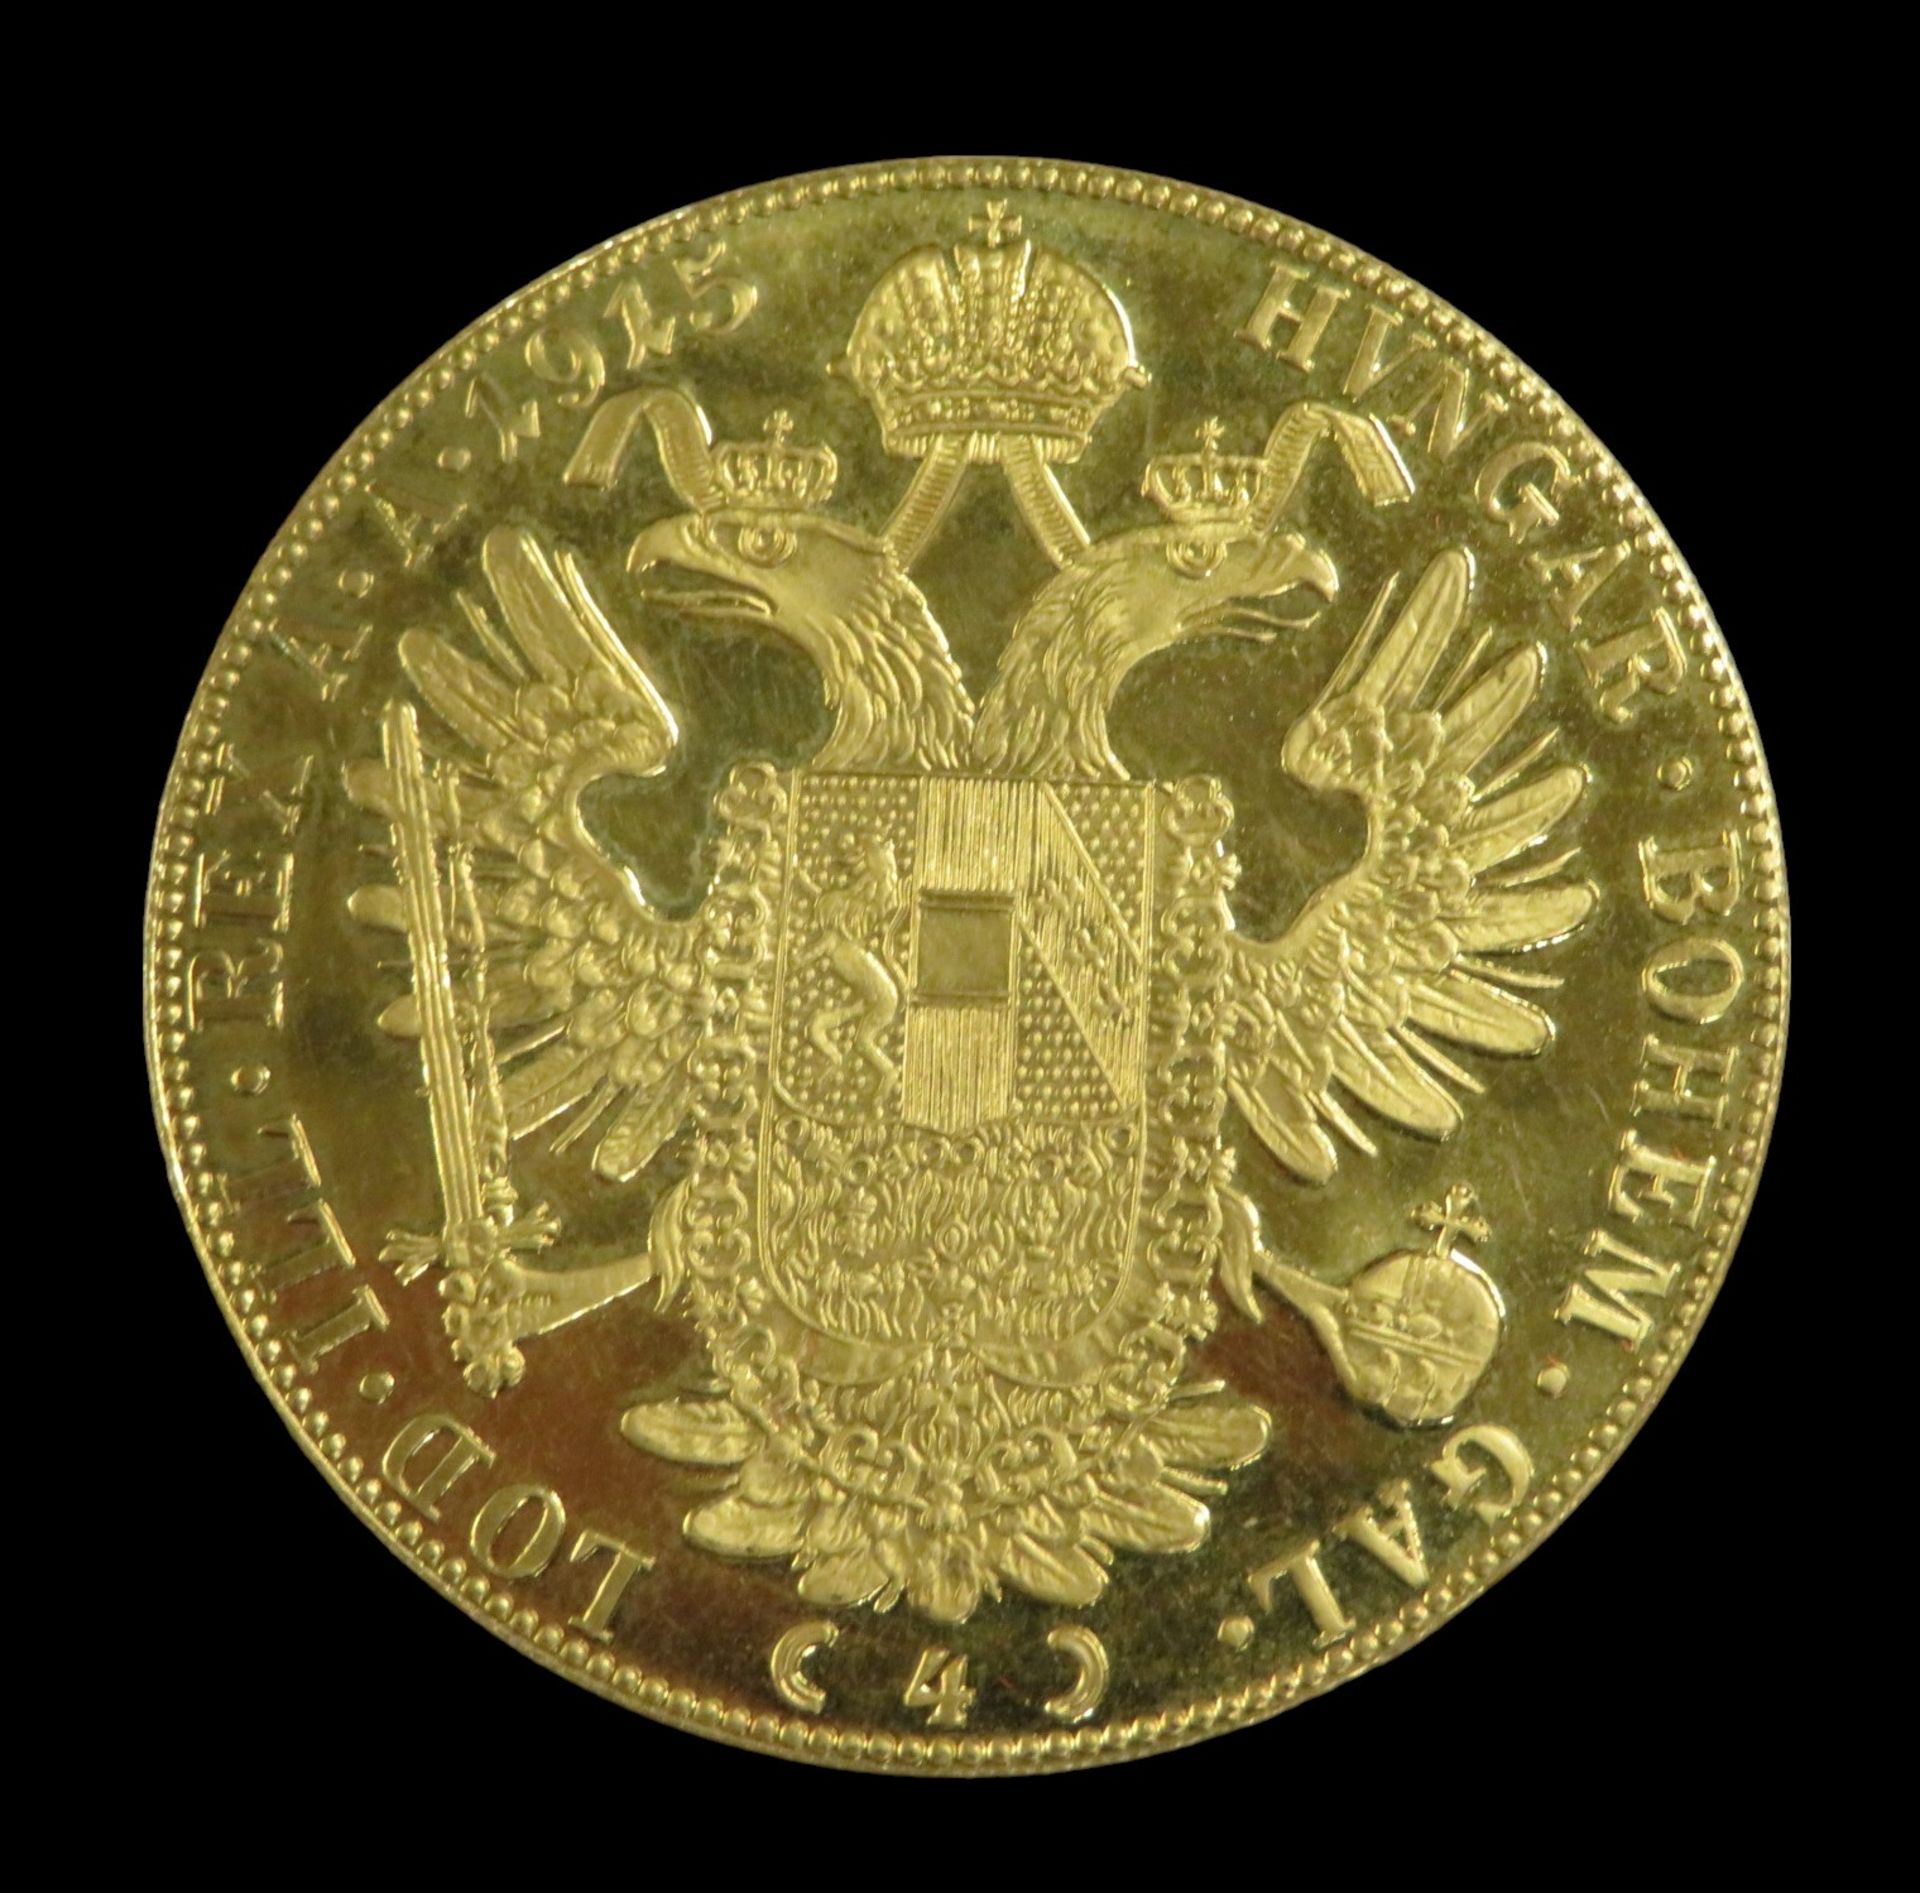 Goldmünze, 4 Dukaten, Österreich, Franz Joseph I, 1915, Gold 986/000, 13,96 g, d 3,95 cm. - Bild 2 aus 2